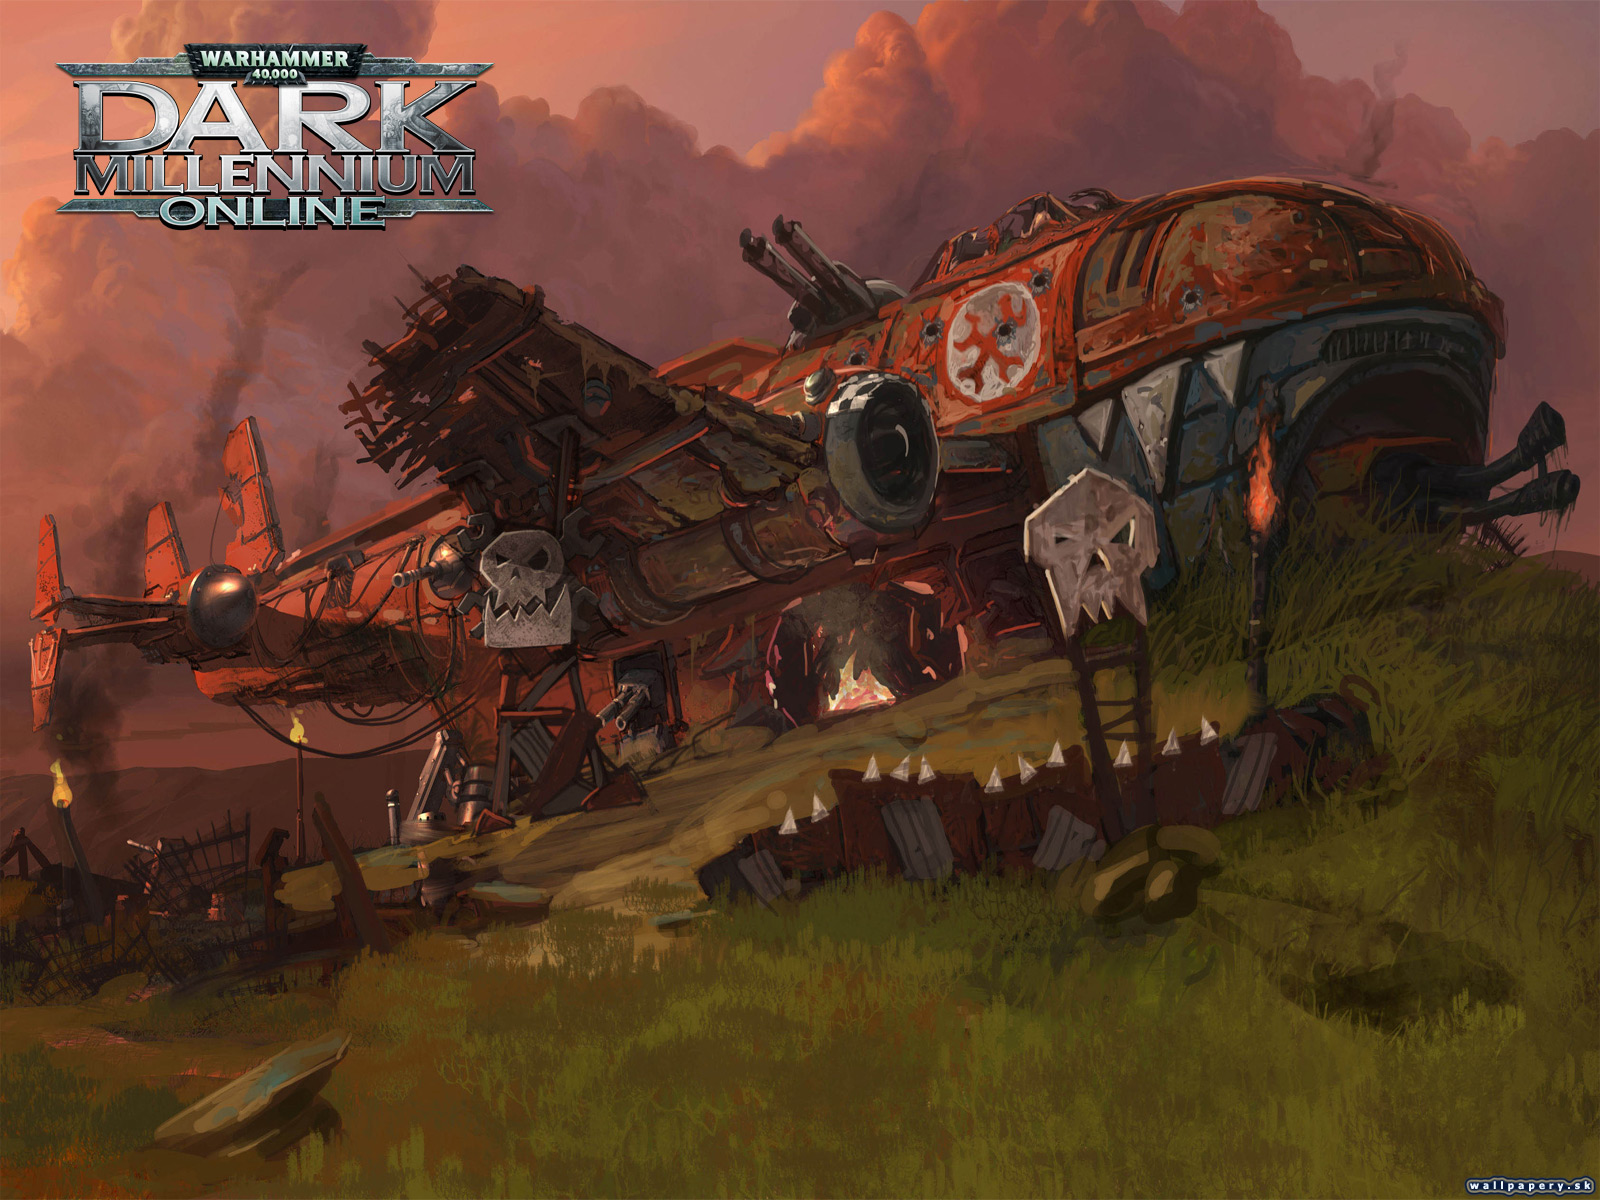 Warhammer 40,000: Dark Millennium Online - wallpaper 1